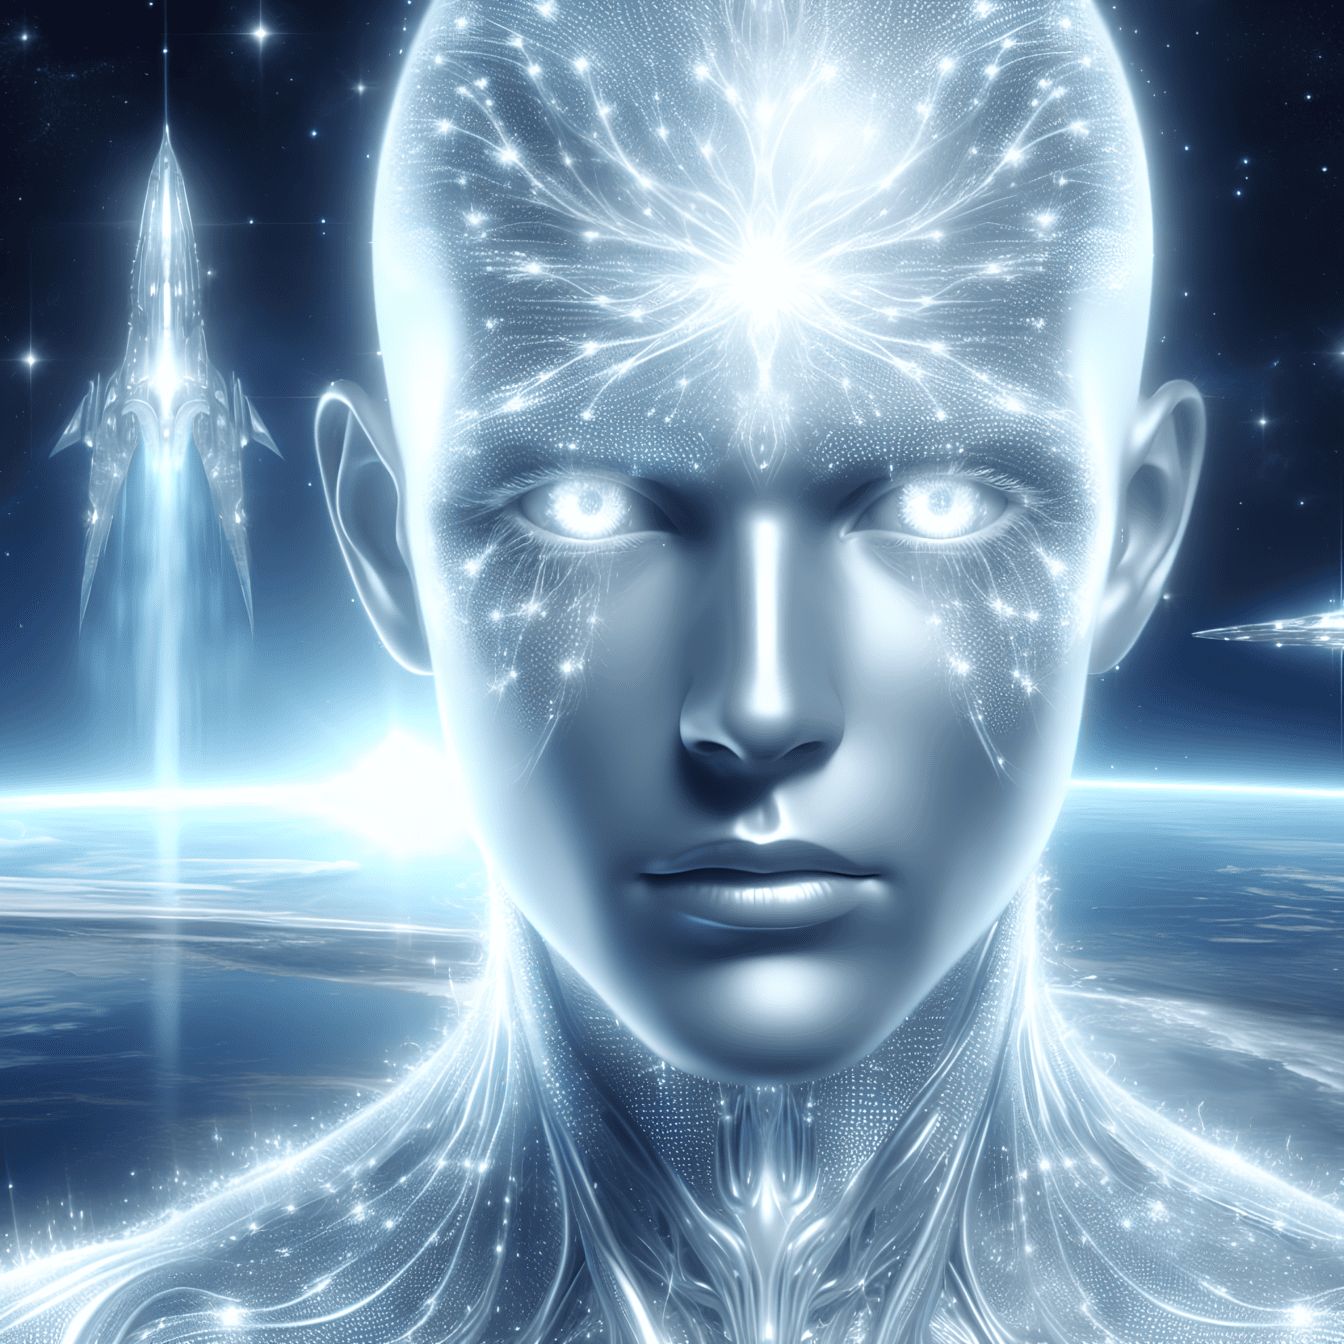 O conceito de alienígena quântico, retrato de um ciborgue extraterrestre de inteligência artificial com uma nave espacial ao fundo